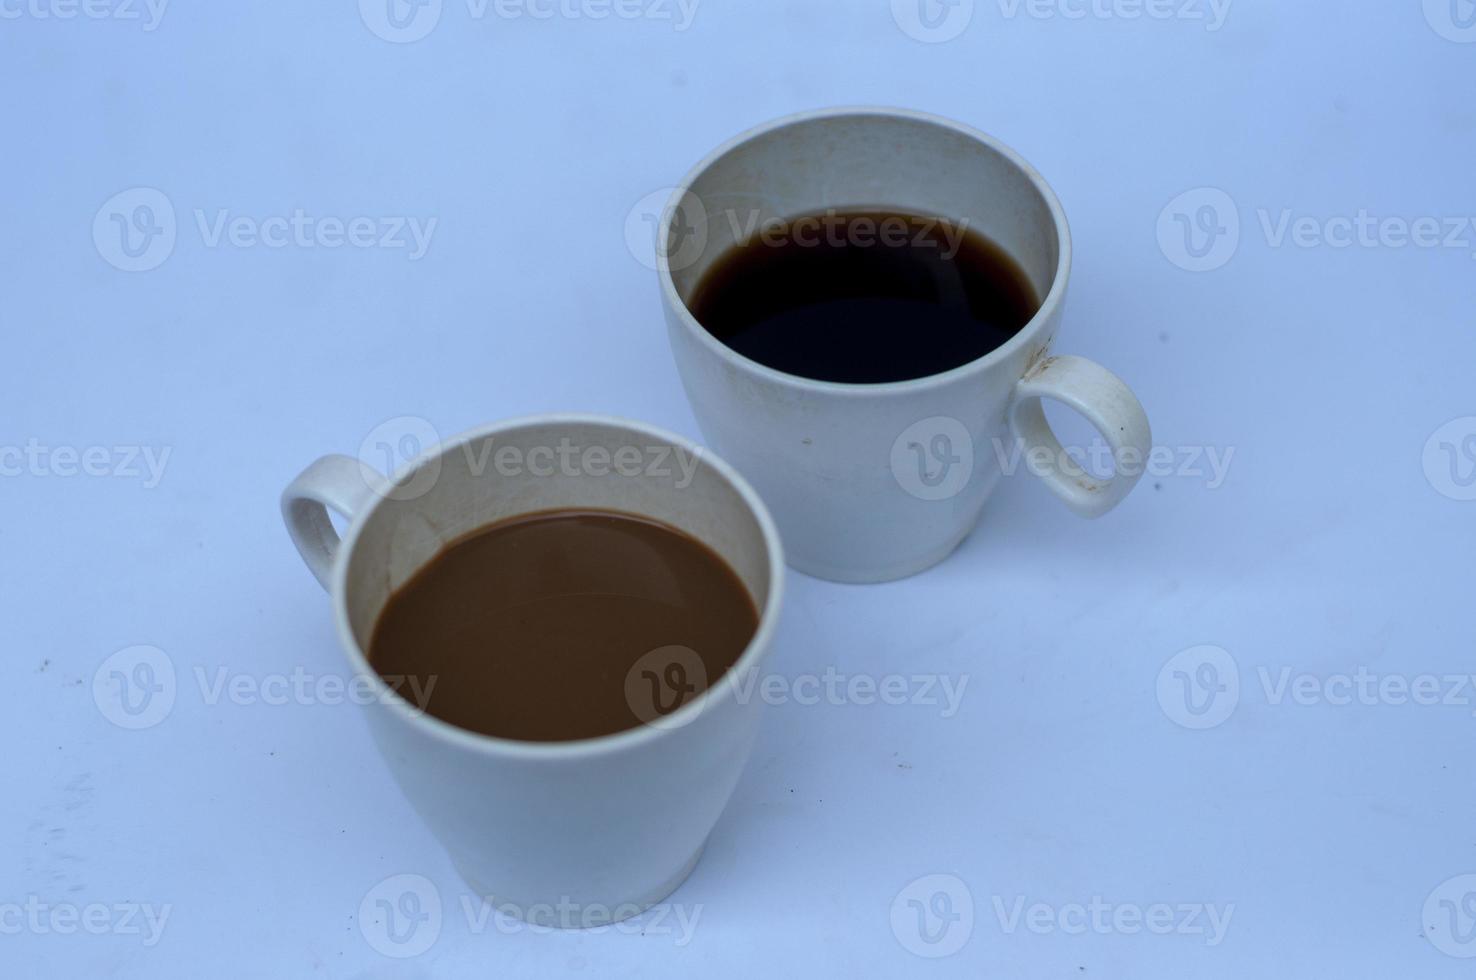 um copo de café. foto conceitual sobre café